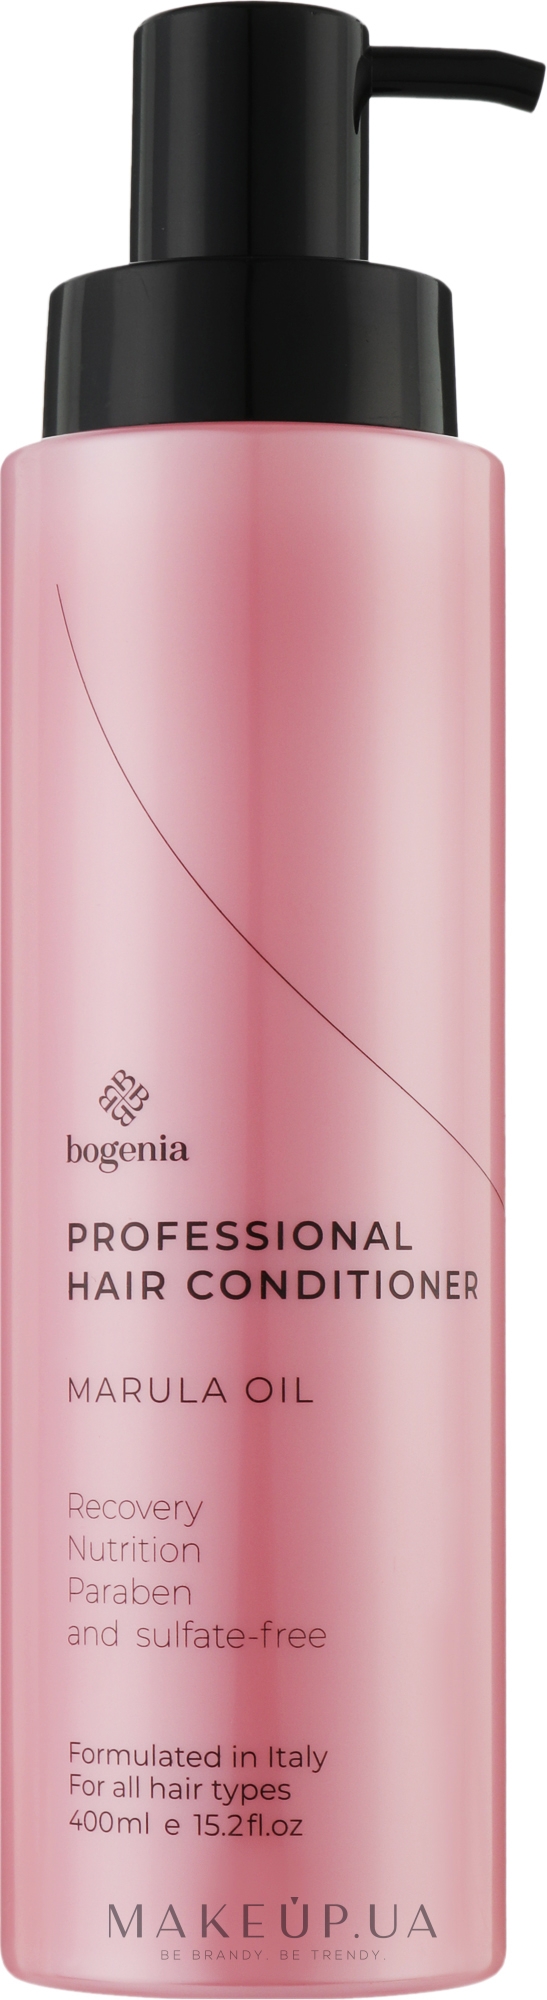 Професійний зволожувальний кондиціонер для волосся з олією марули - Bogenia Professional Hair Conditioner Marula Oil — фото 400ml